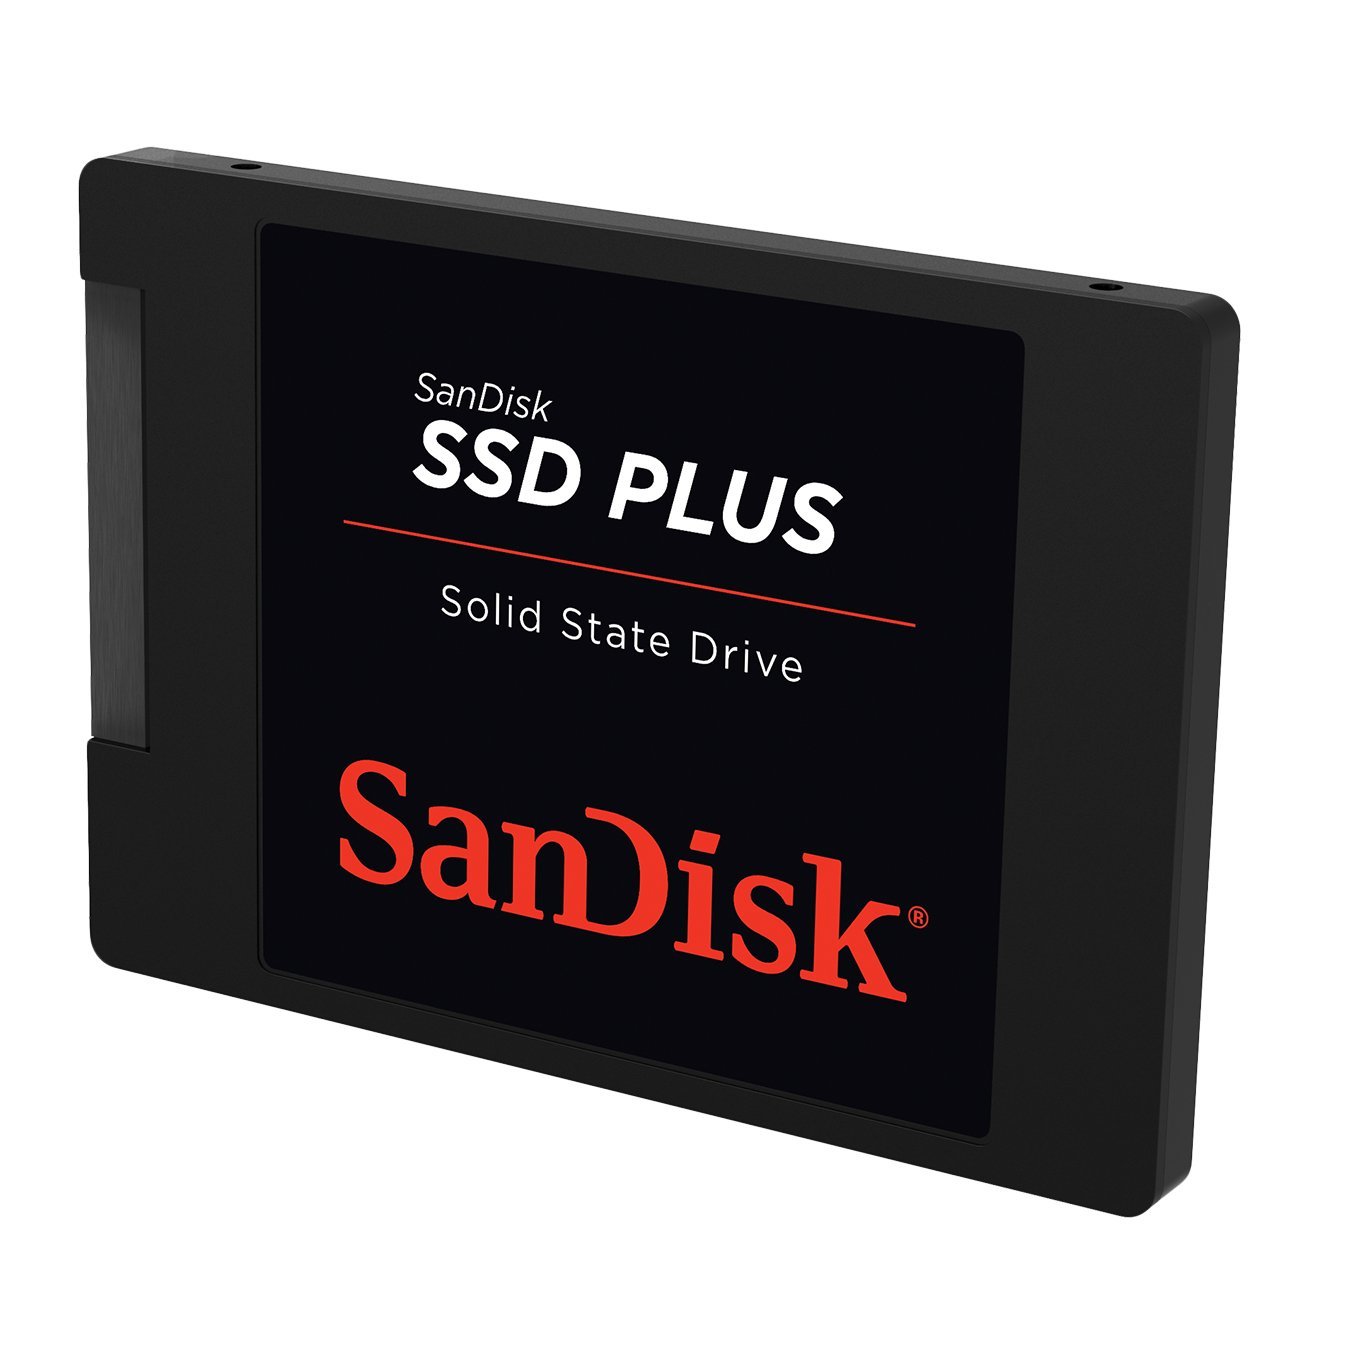 SanDisk SSD Plus Solid State Drive - SanDisk Singapore Distributor Vector Magnetics Pte Ltd